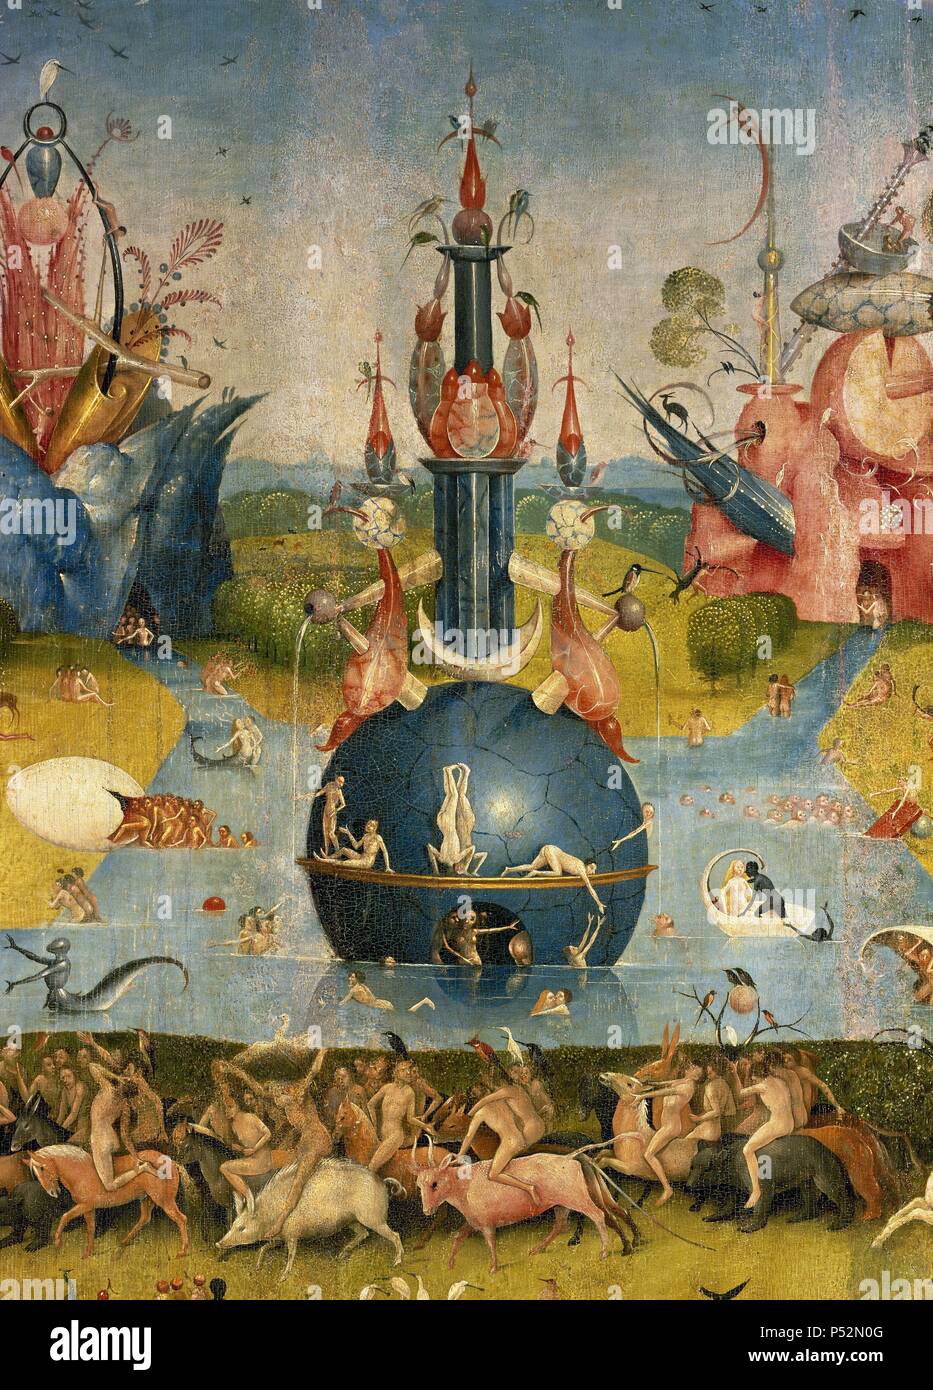 ARTE RENACIMIENTO. HOLANDA. Aeken Bosch, Hieronymus Bosch o "El Bosco"  (Bois-le-Duc,1450-Bois-le-Duc,1516). Pintor y grabador neerlandés,  perteneciente a la "Escuela Flamenca". 'EL JARDÍN DE LAS DELICIAS O LA  PINTURA DEL MADROÑO". Tríptico en